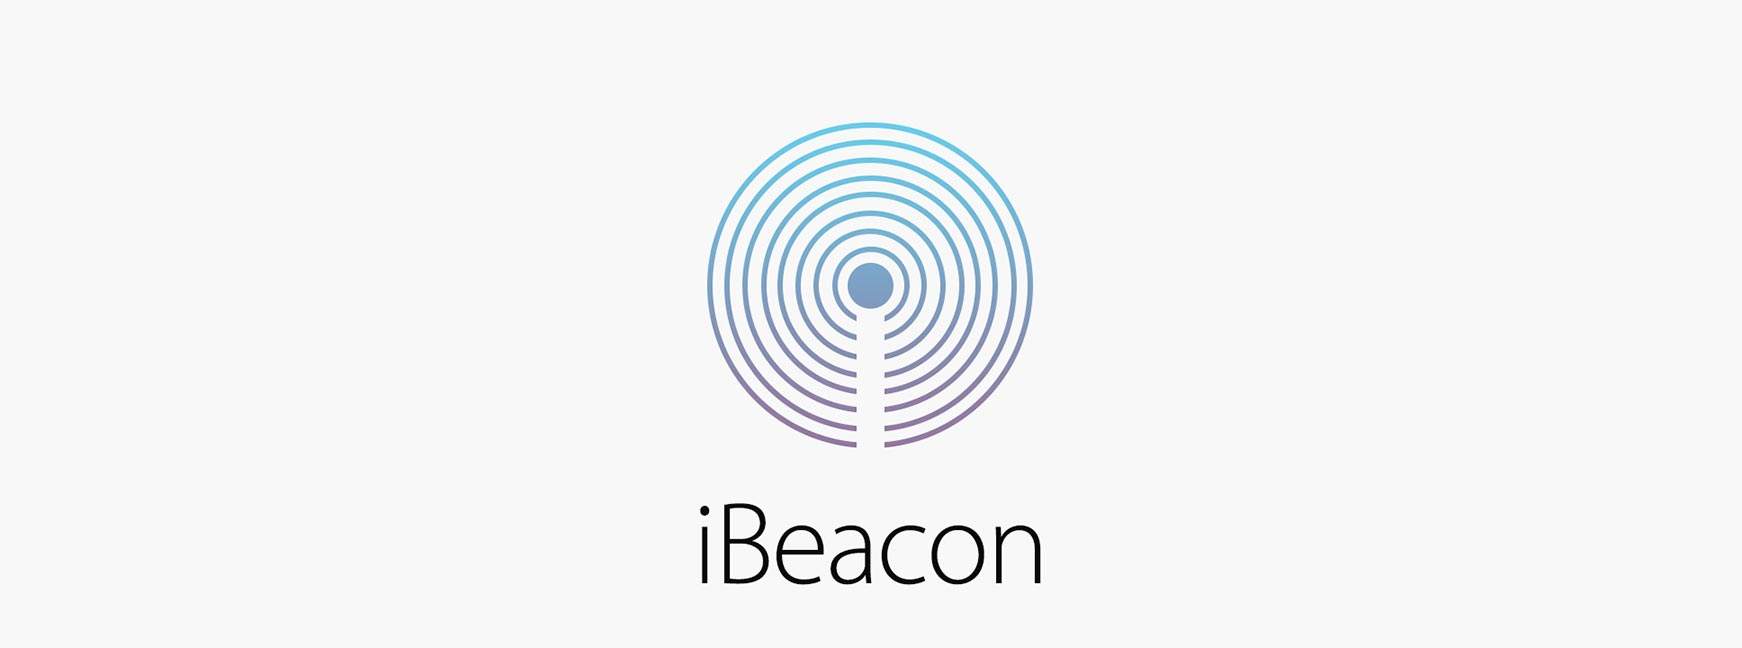 Ein Leitfaden zur Entwicklung mit iBeacon für Bluetooth-Beacons